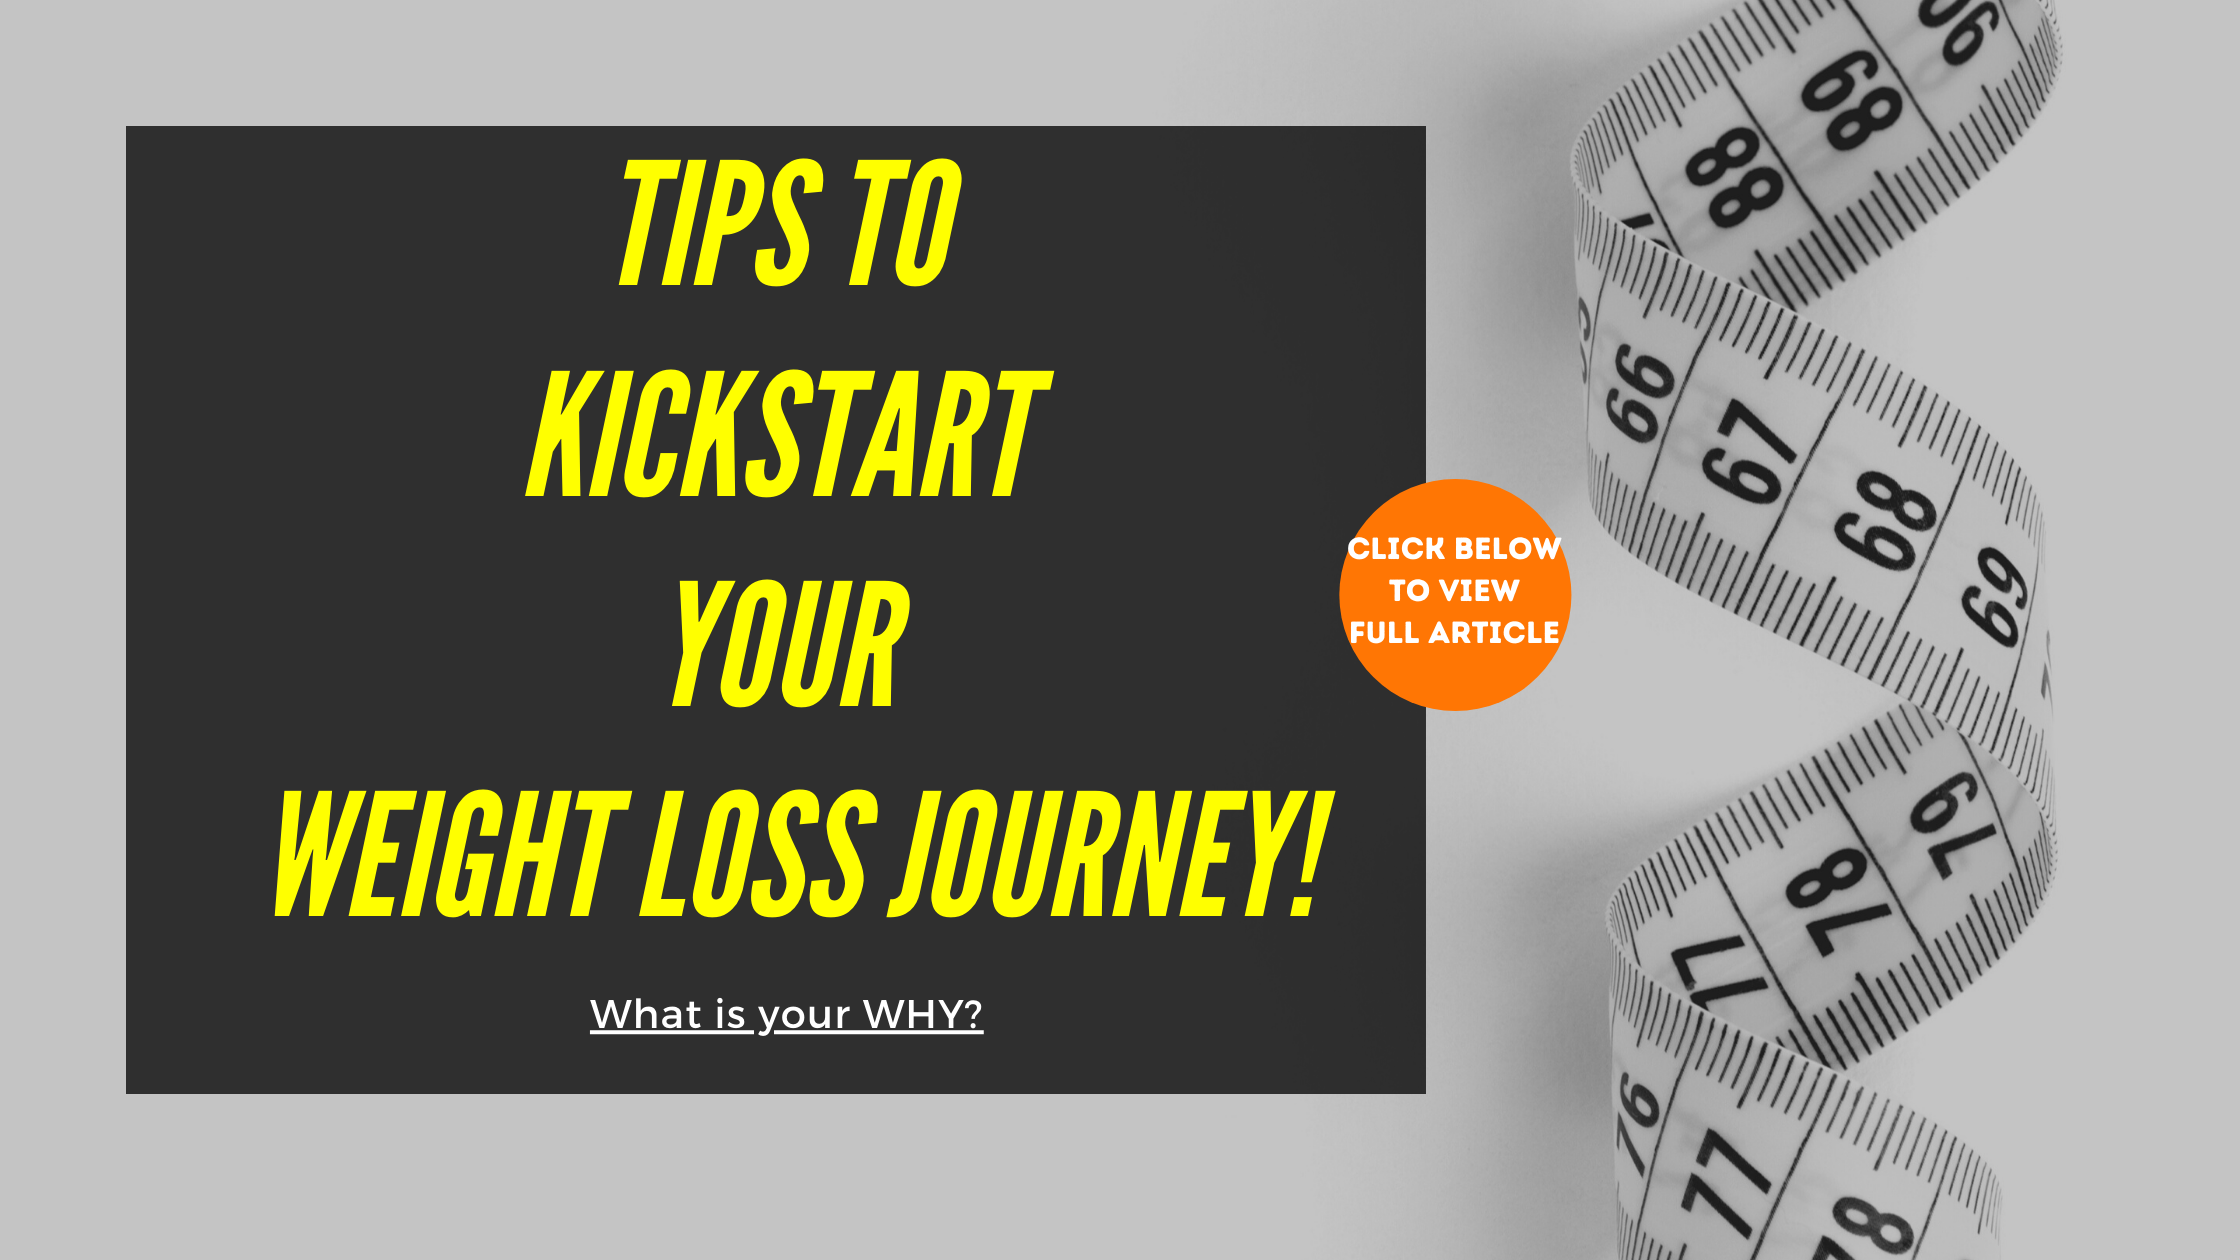 Kickstart Your Weight Loss Journey!